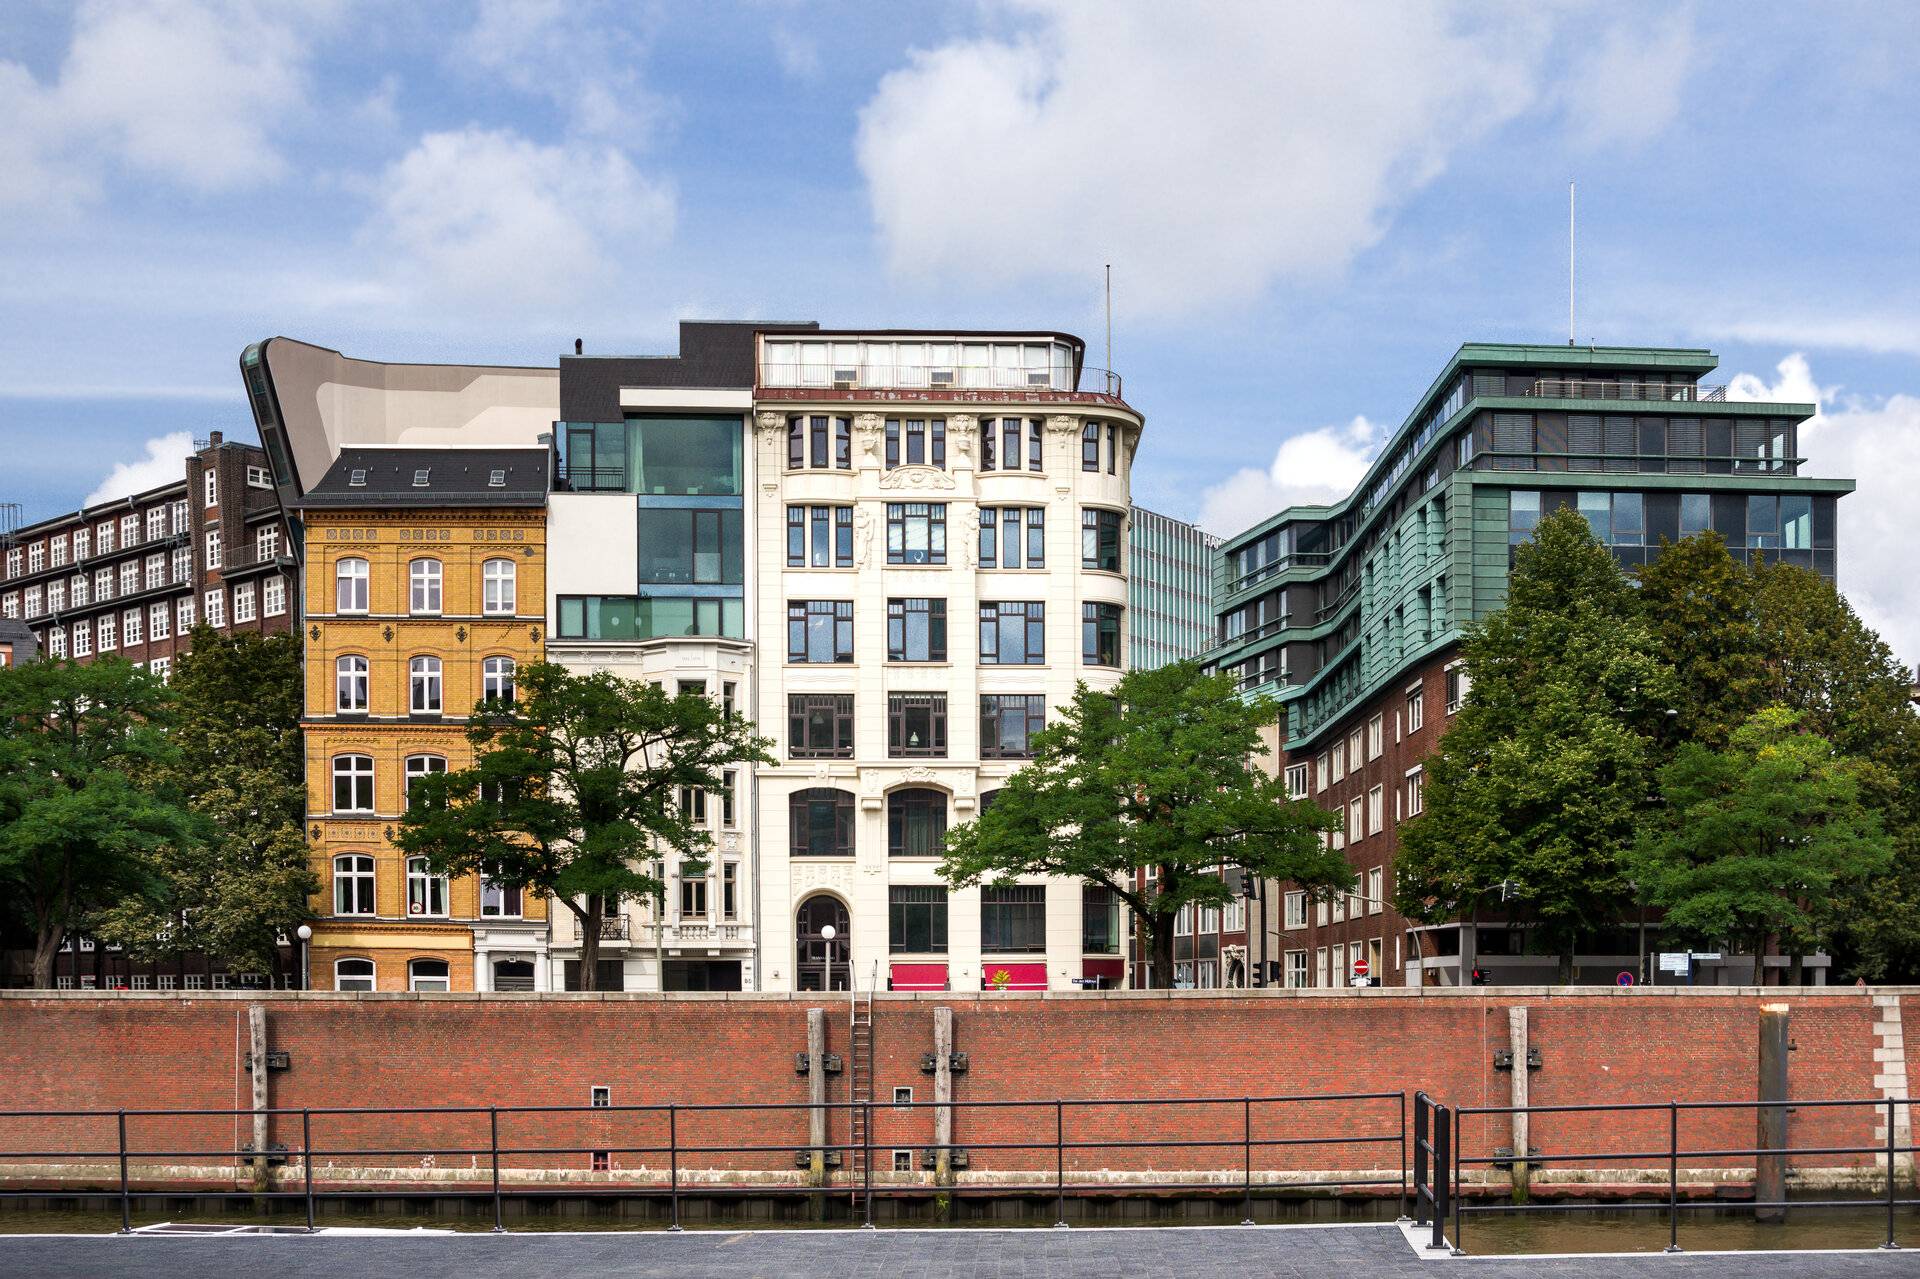 Altbau oder Neubau? Welche Wohnform ist in Hamburg zu bevorzugen?